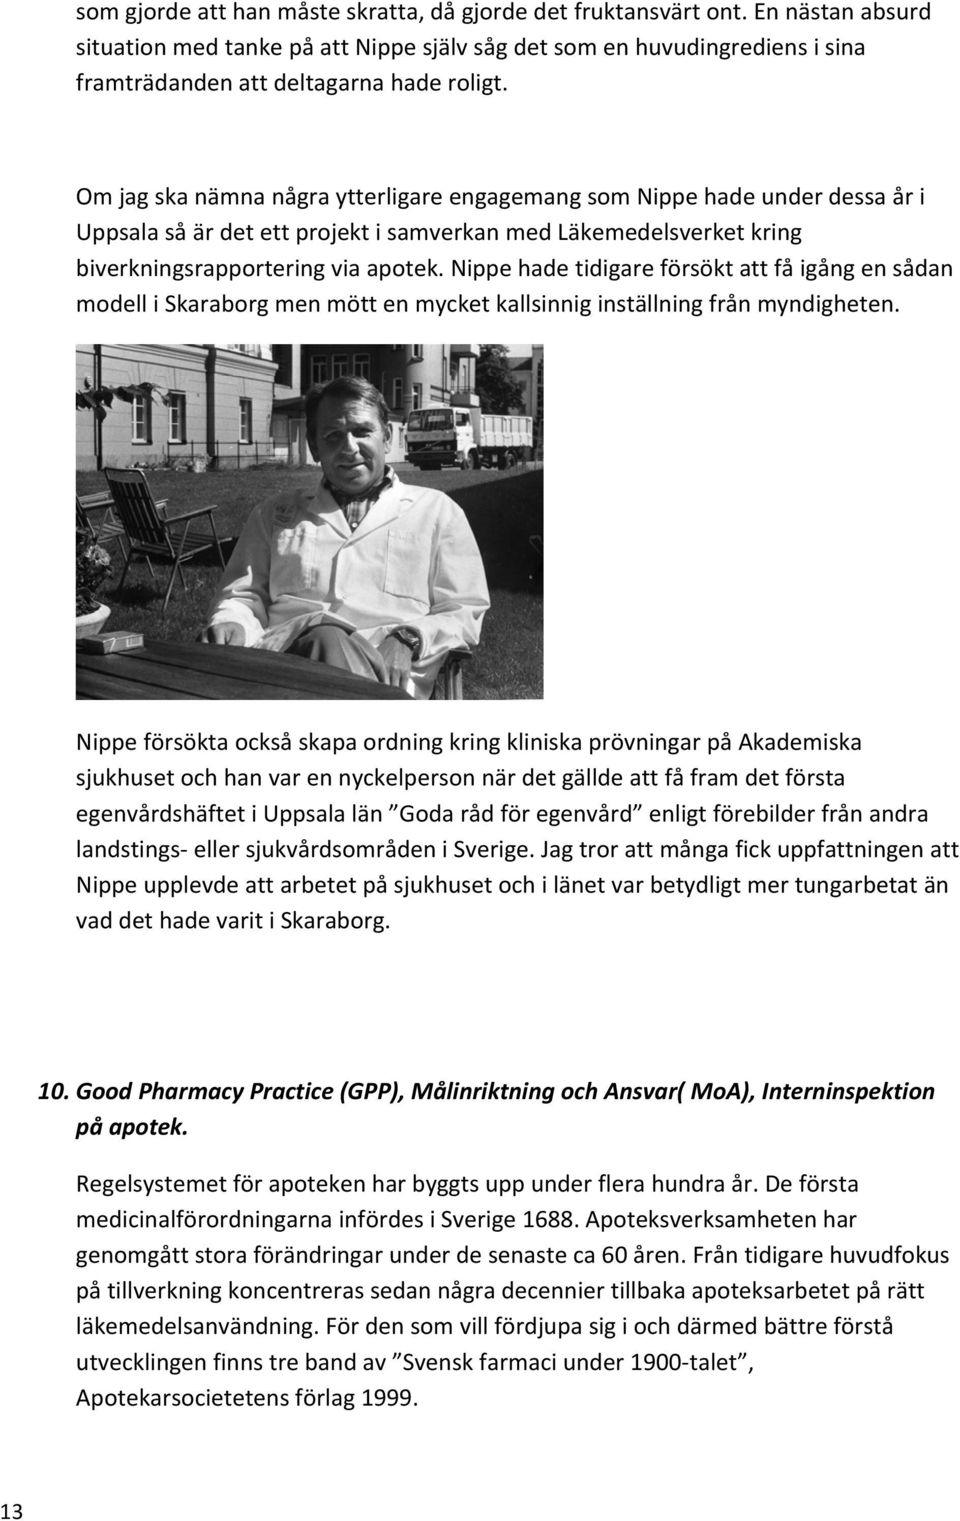 Om jag ska nämna några ytterligare engagemang som Nippe hade under dessa år i Uppsala så är det ett projekt i samverkan med Läkemedelsverket kring biverkningsrapportering via apotek.